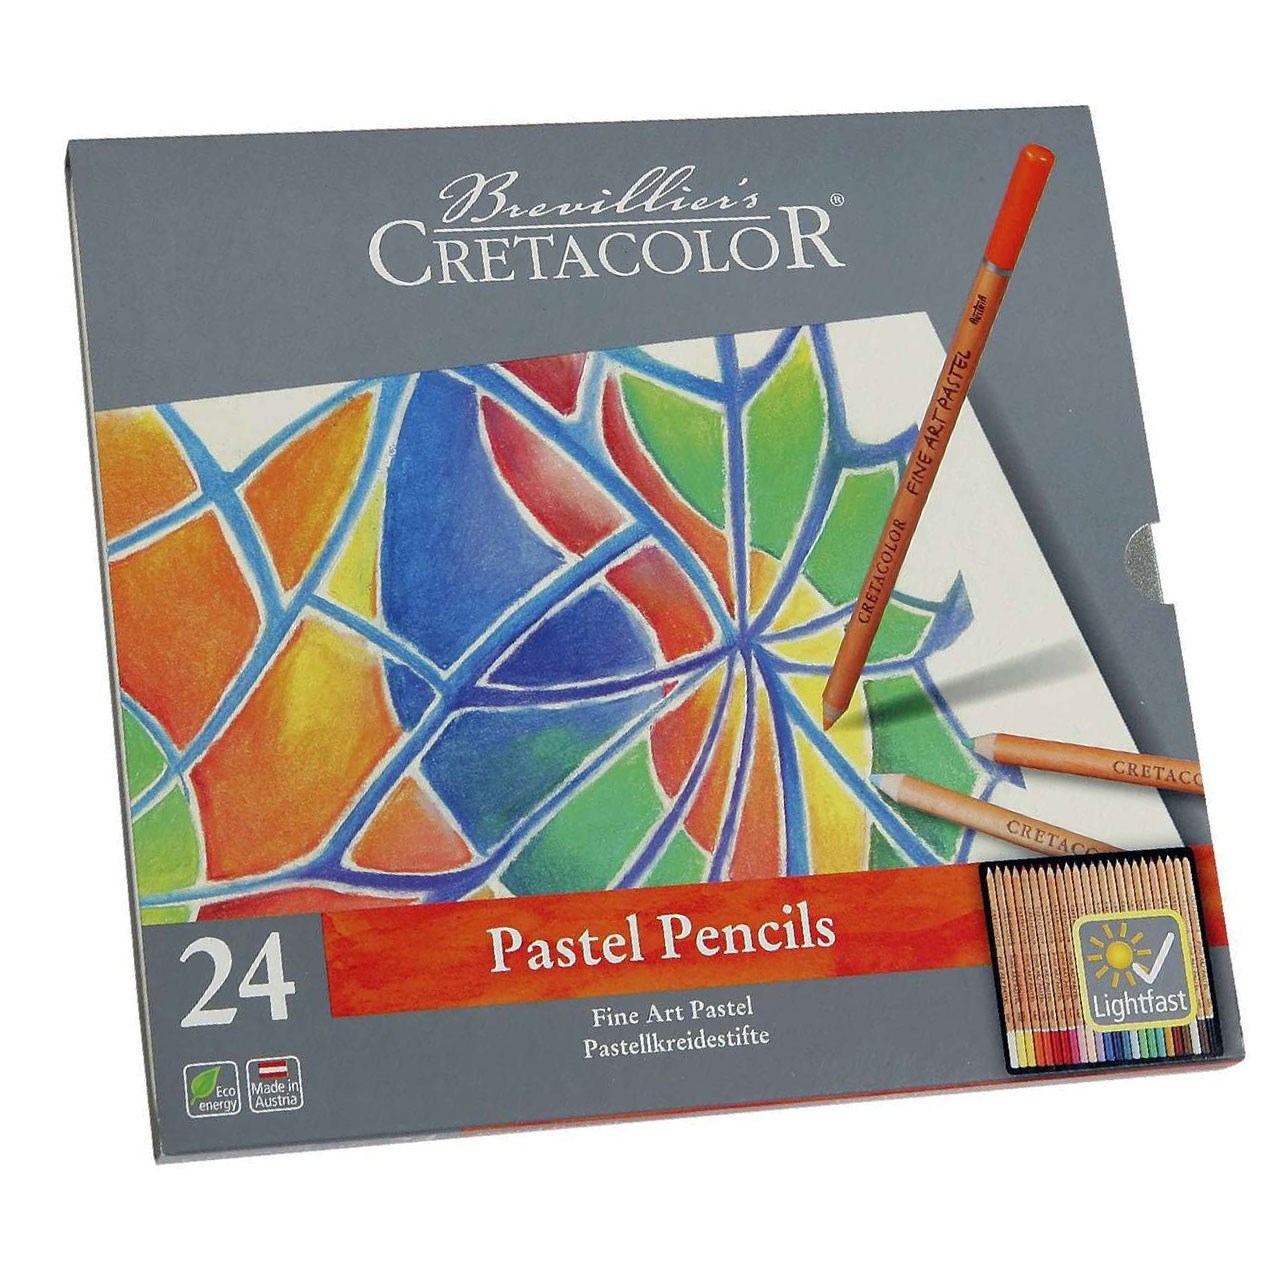 مداد پاستل 24 رنگ کرتاکالر مدل 47024